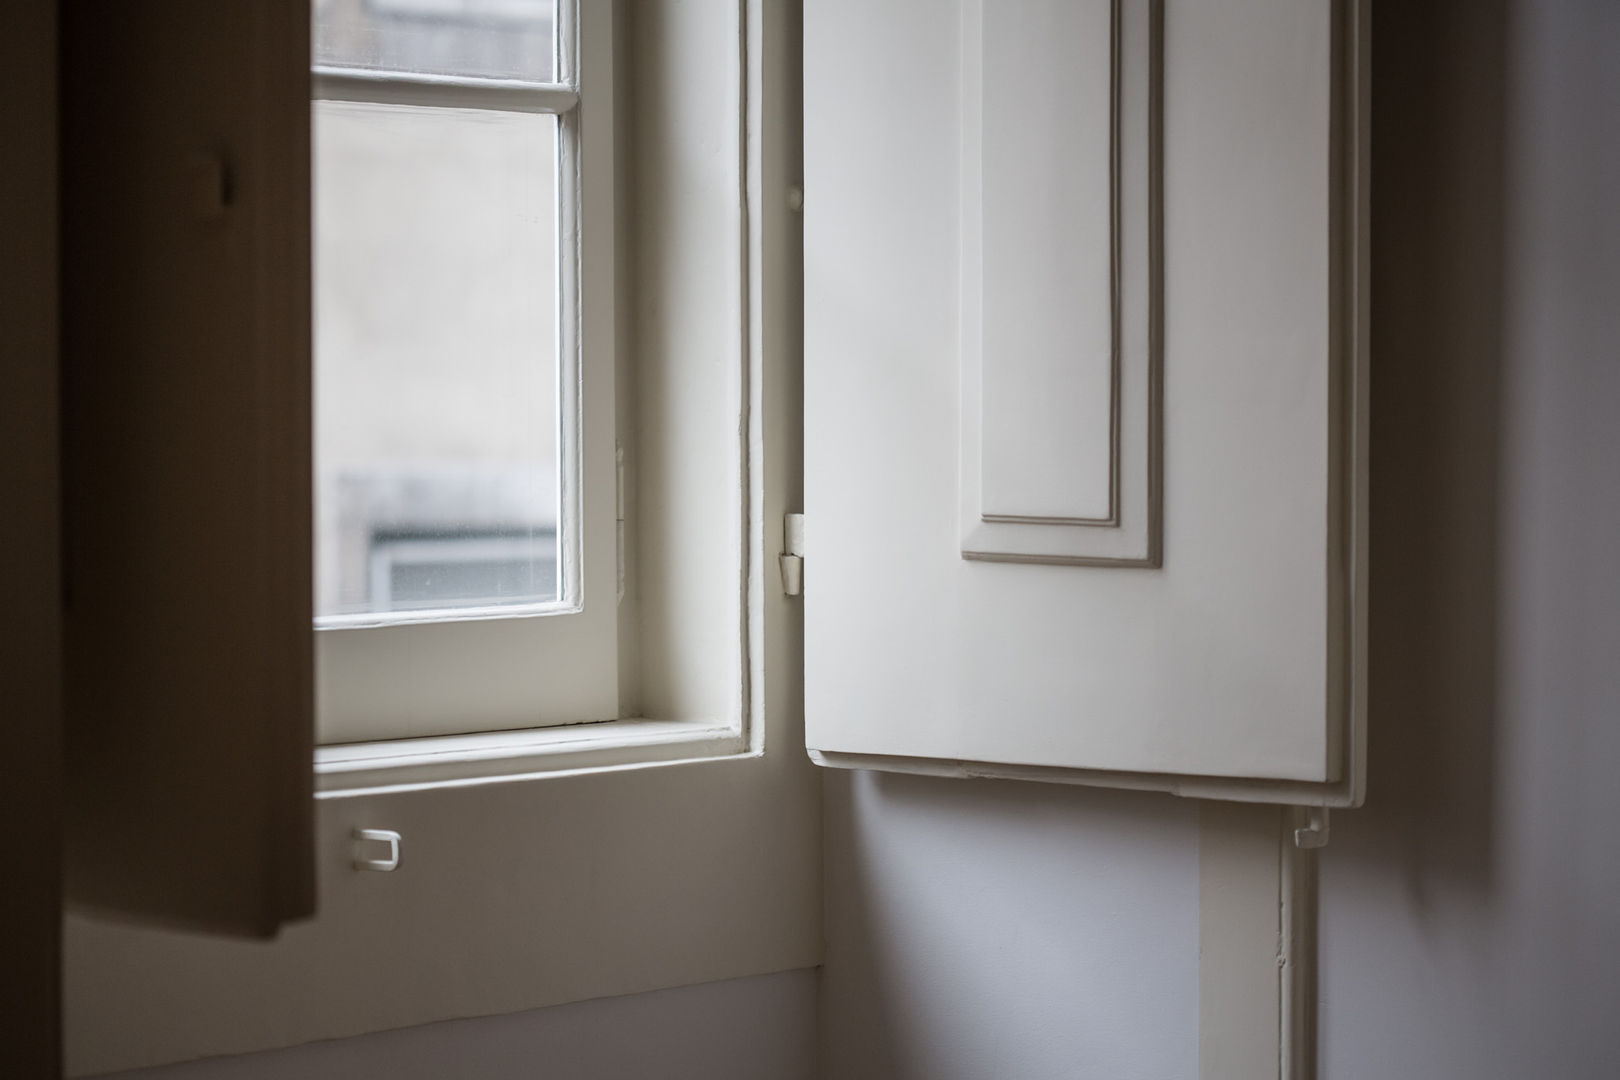 Reabilitação de apartamento pombalino, Architect Your Home Architect Your Home Classic windows & doors